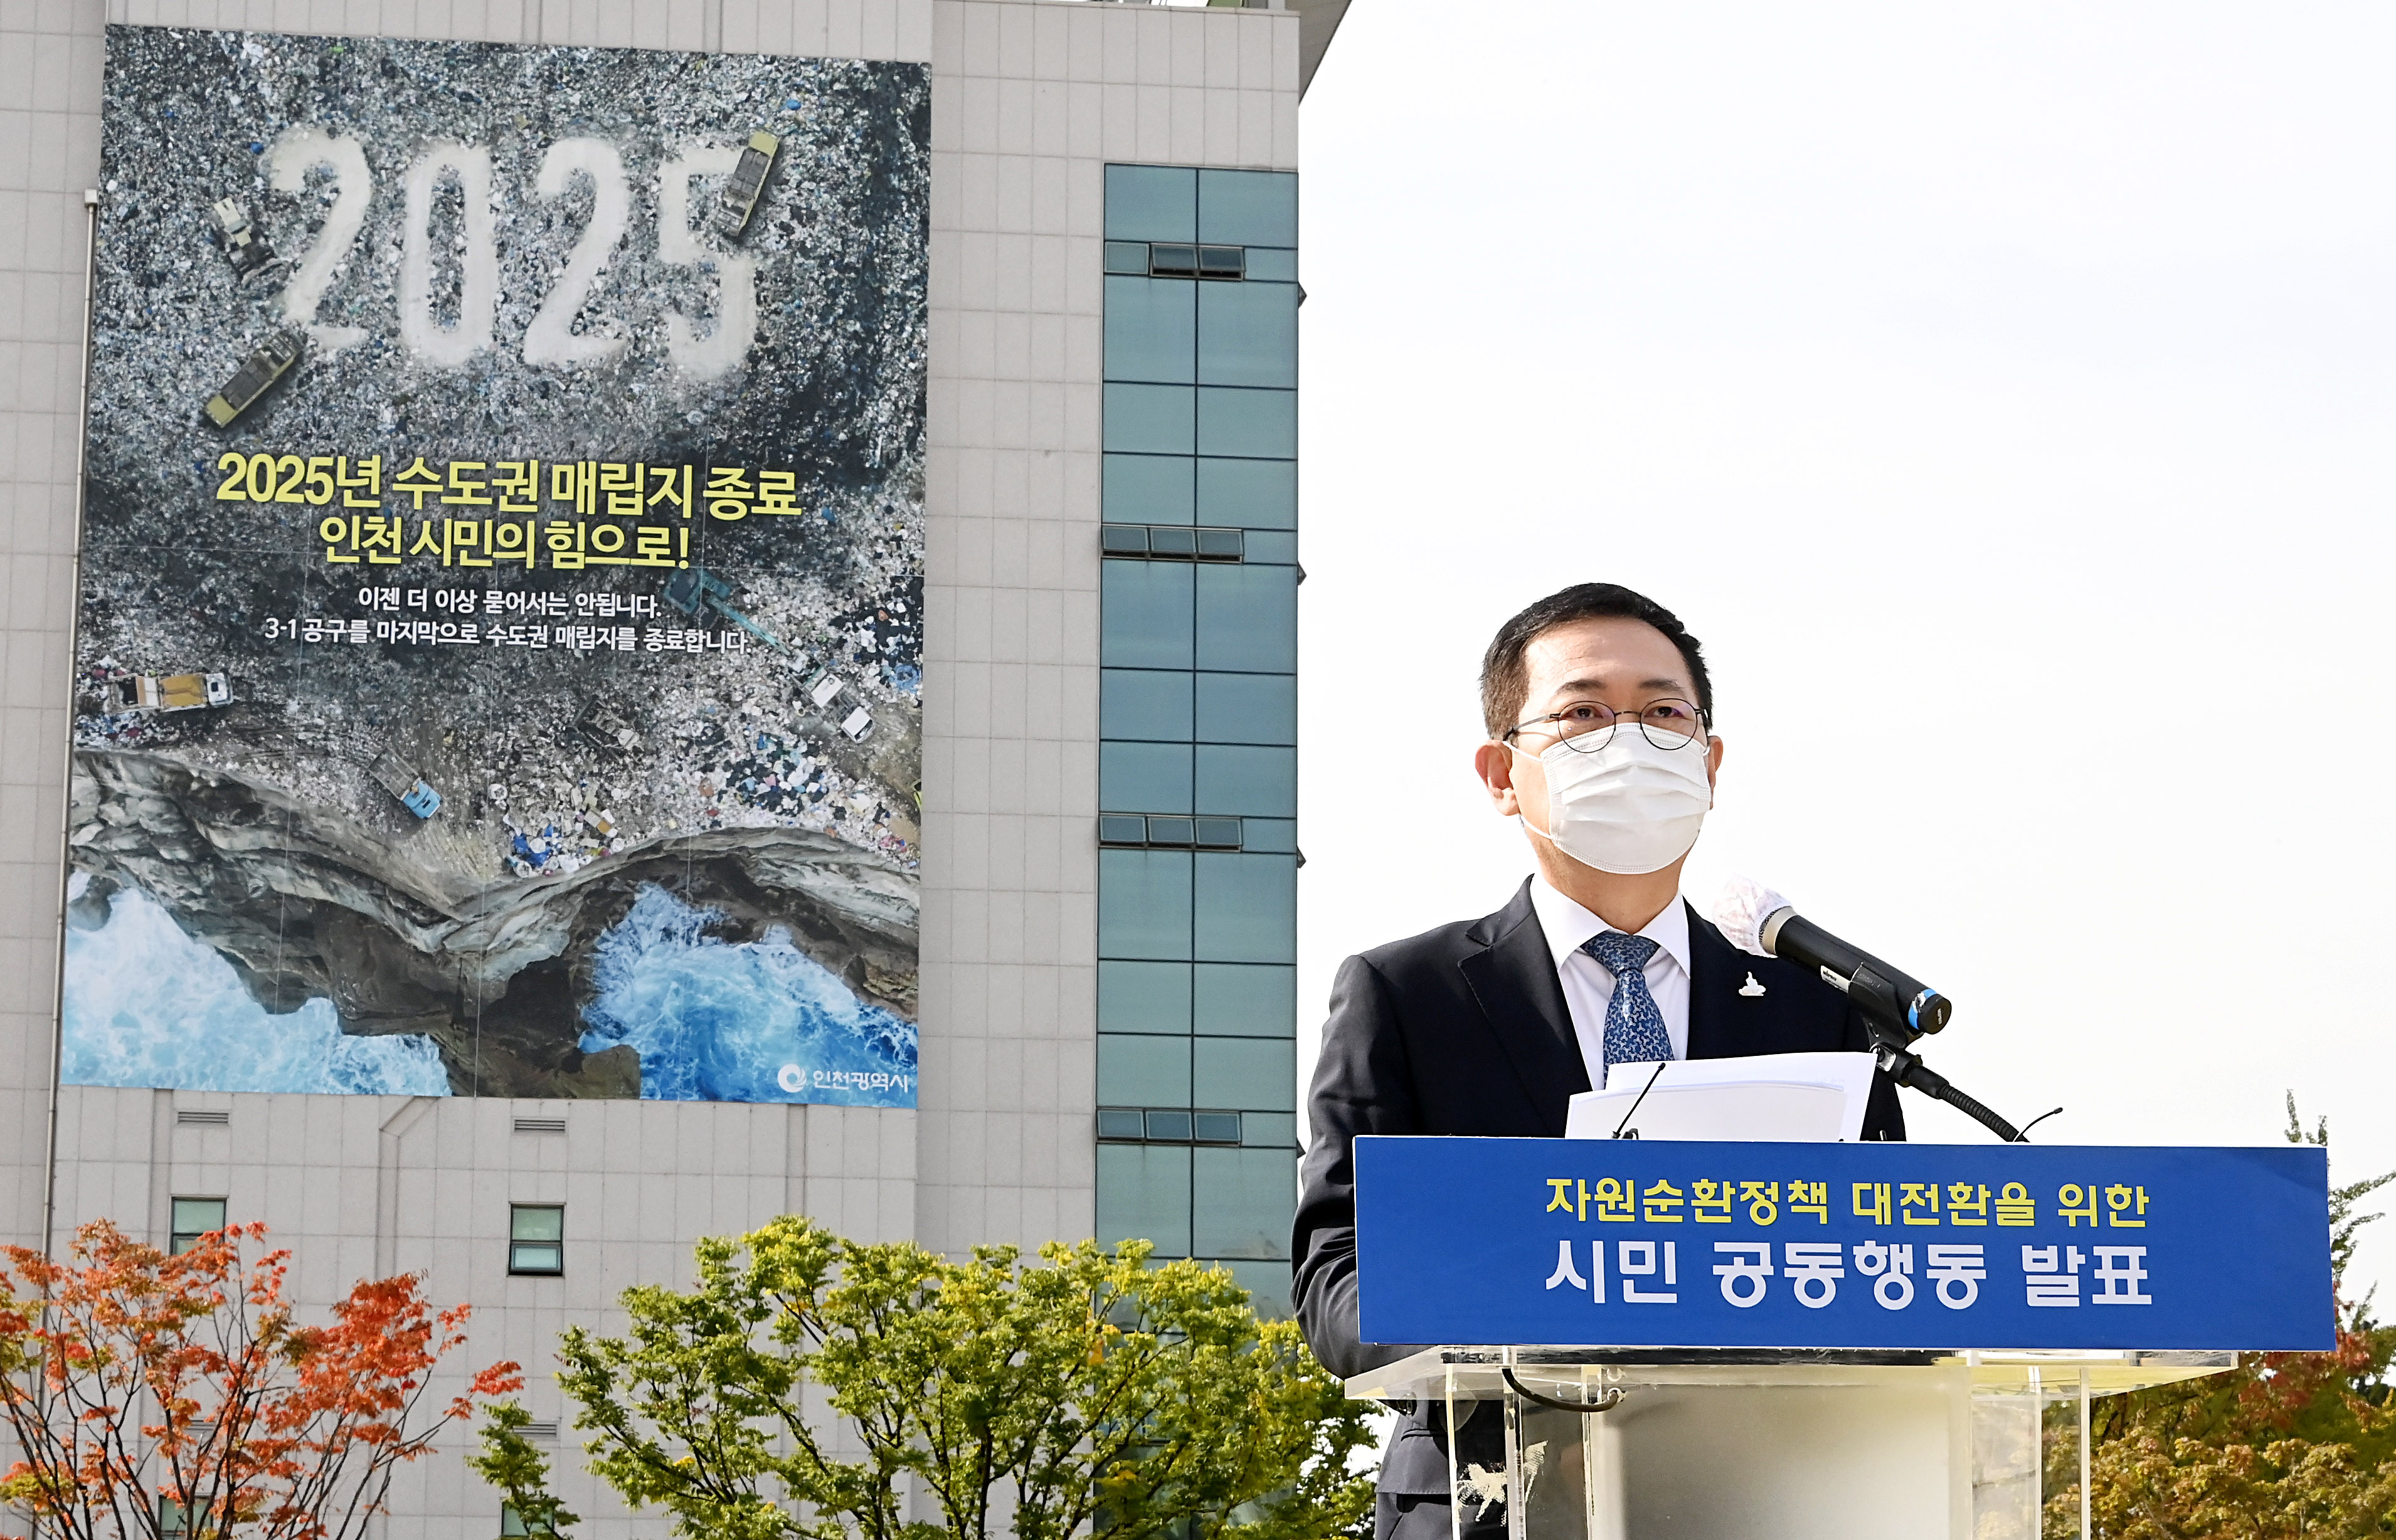 2025 수도권 매립지 종료 관련 발언하는 박남춘 인천시장